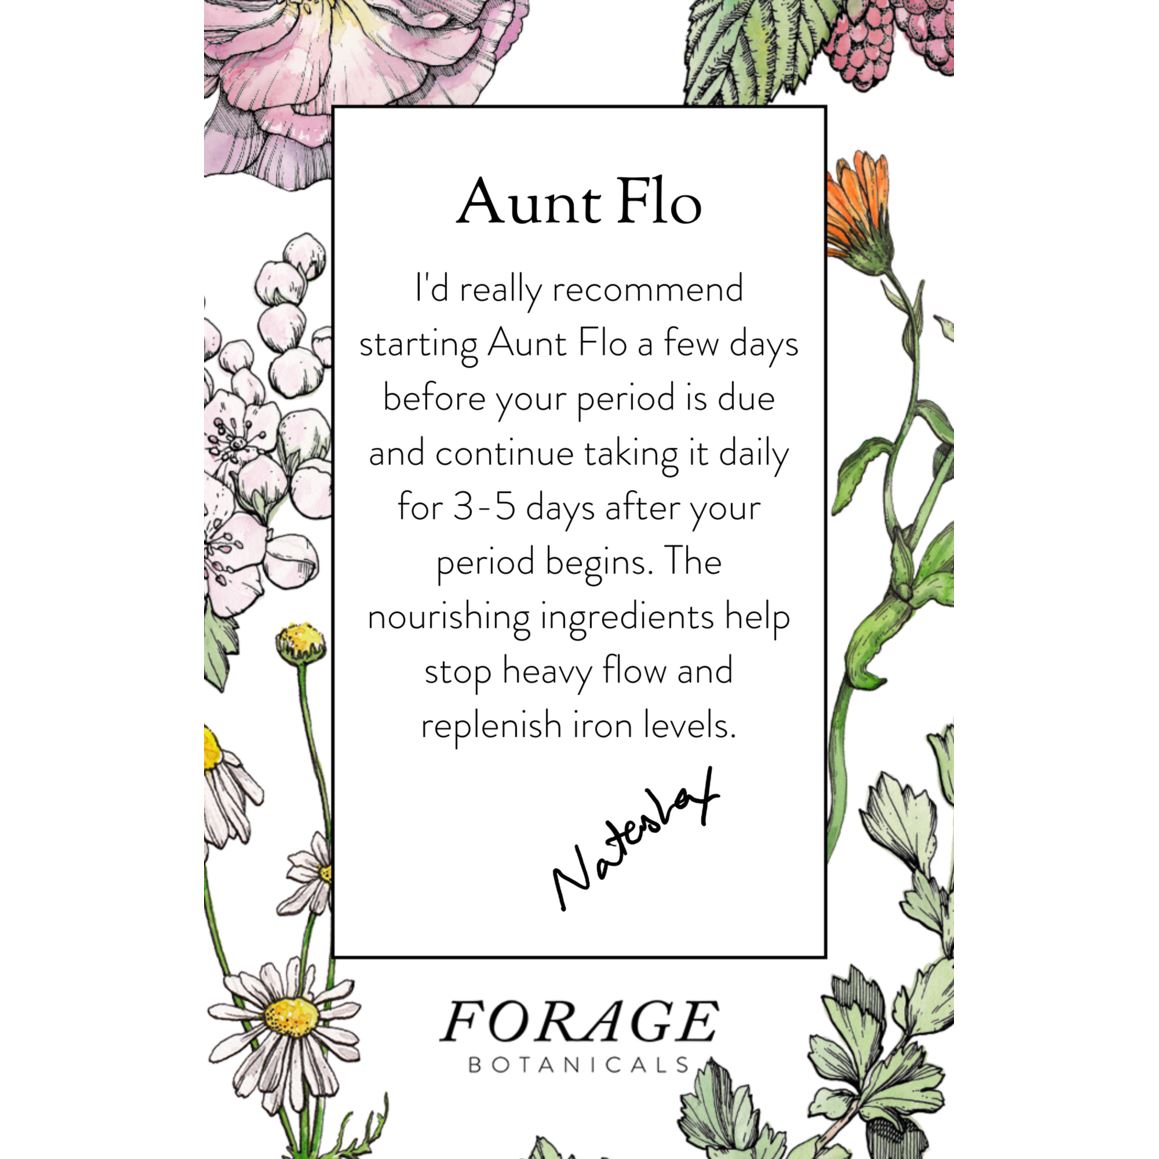 Aunt Flo's Drinking Chocolate Nahrungsergänzungsmittel Forage Botanicals - Genuine Selection